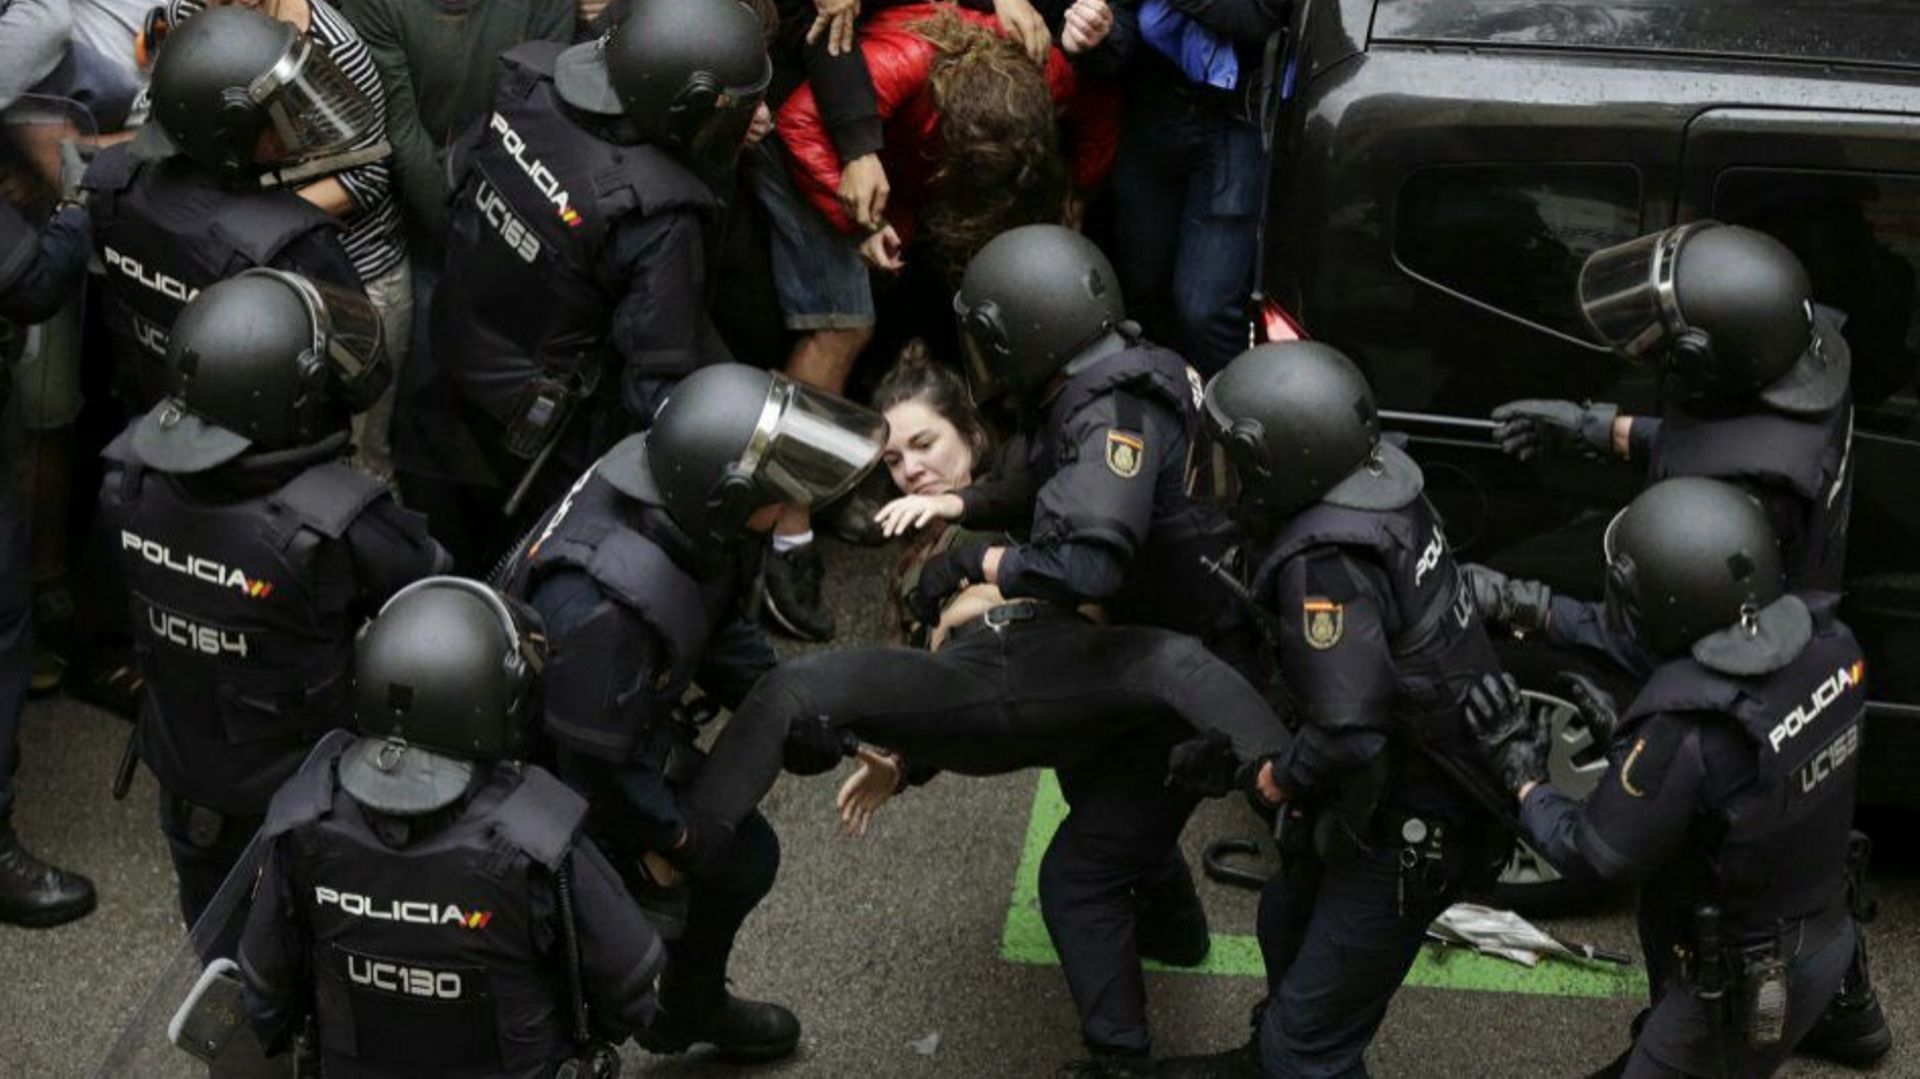 844-catalans-accueillis-dans-les-hopitaux-suite-aux-violences-policieres-92-blesses-dont-deux-gravement